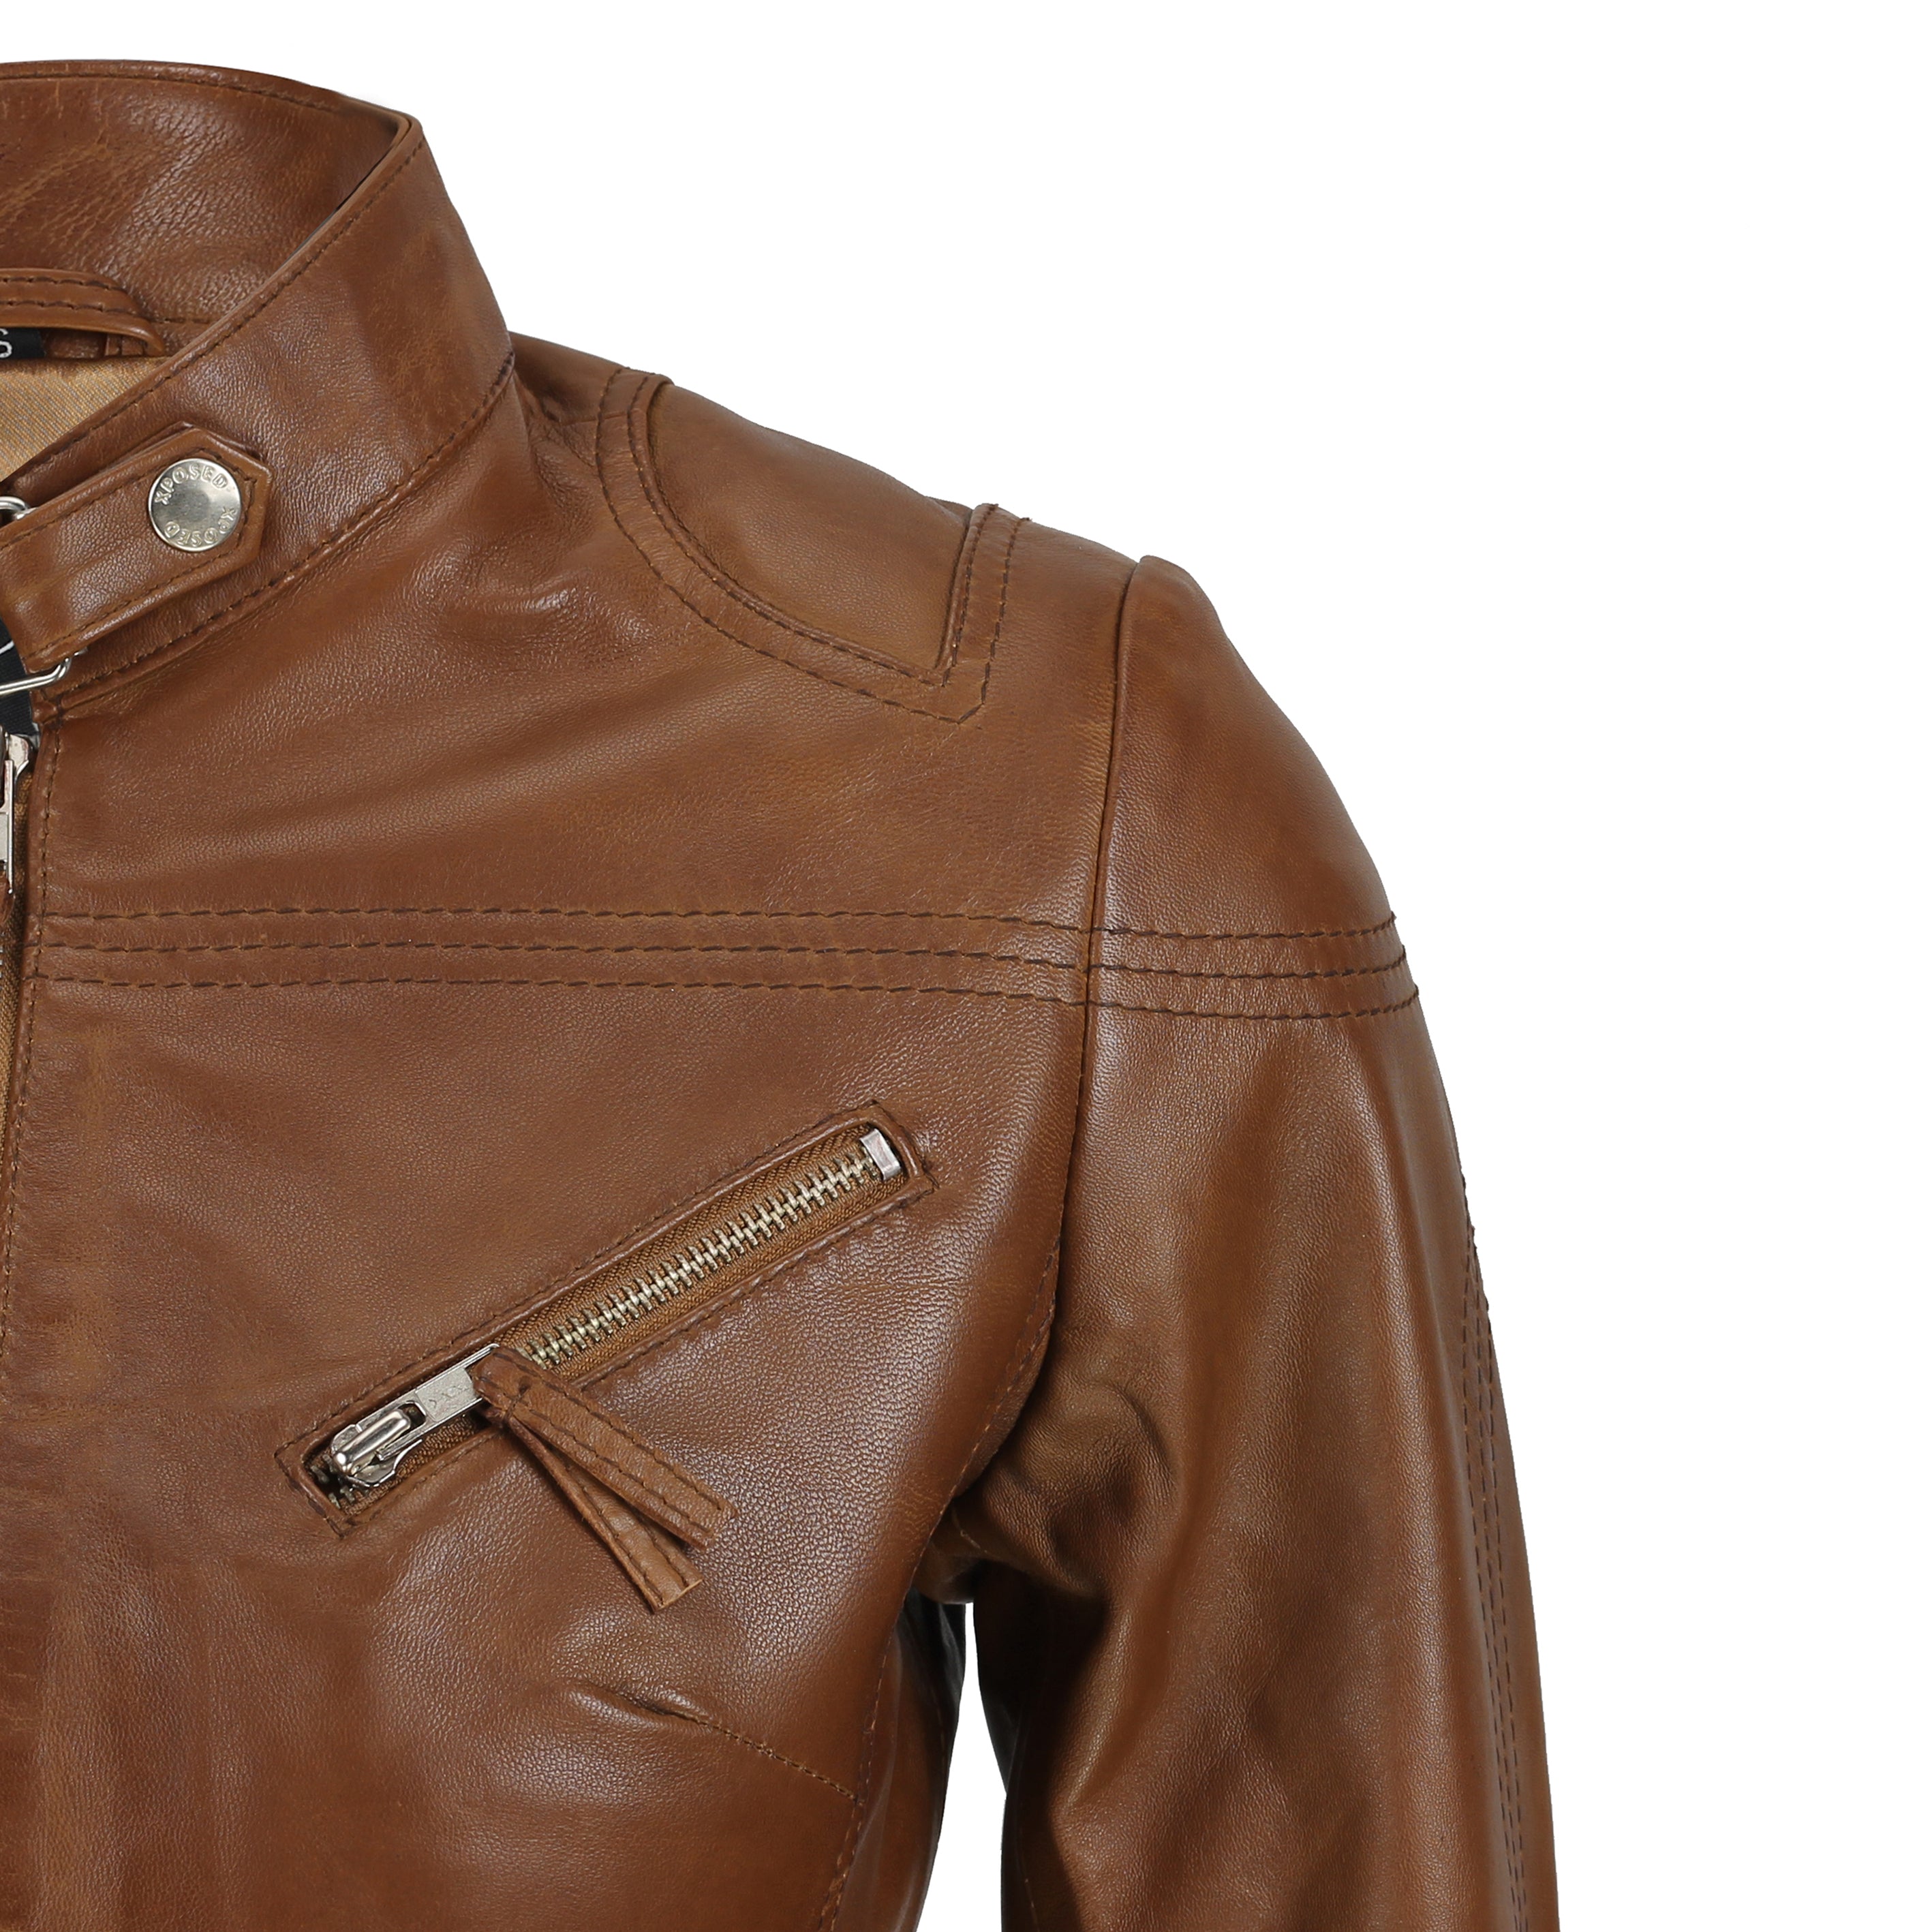 Ladies Women S Real Leather Vintage Fitted Tan Brown Biker Jacket